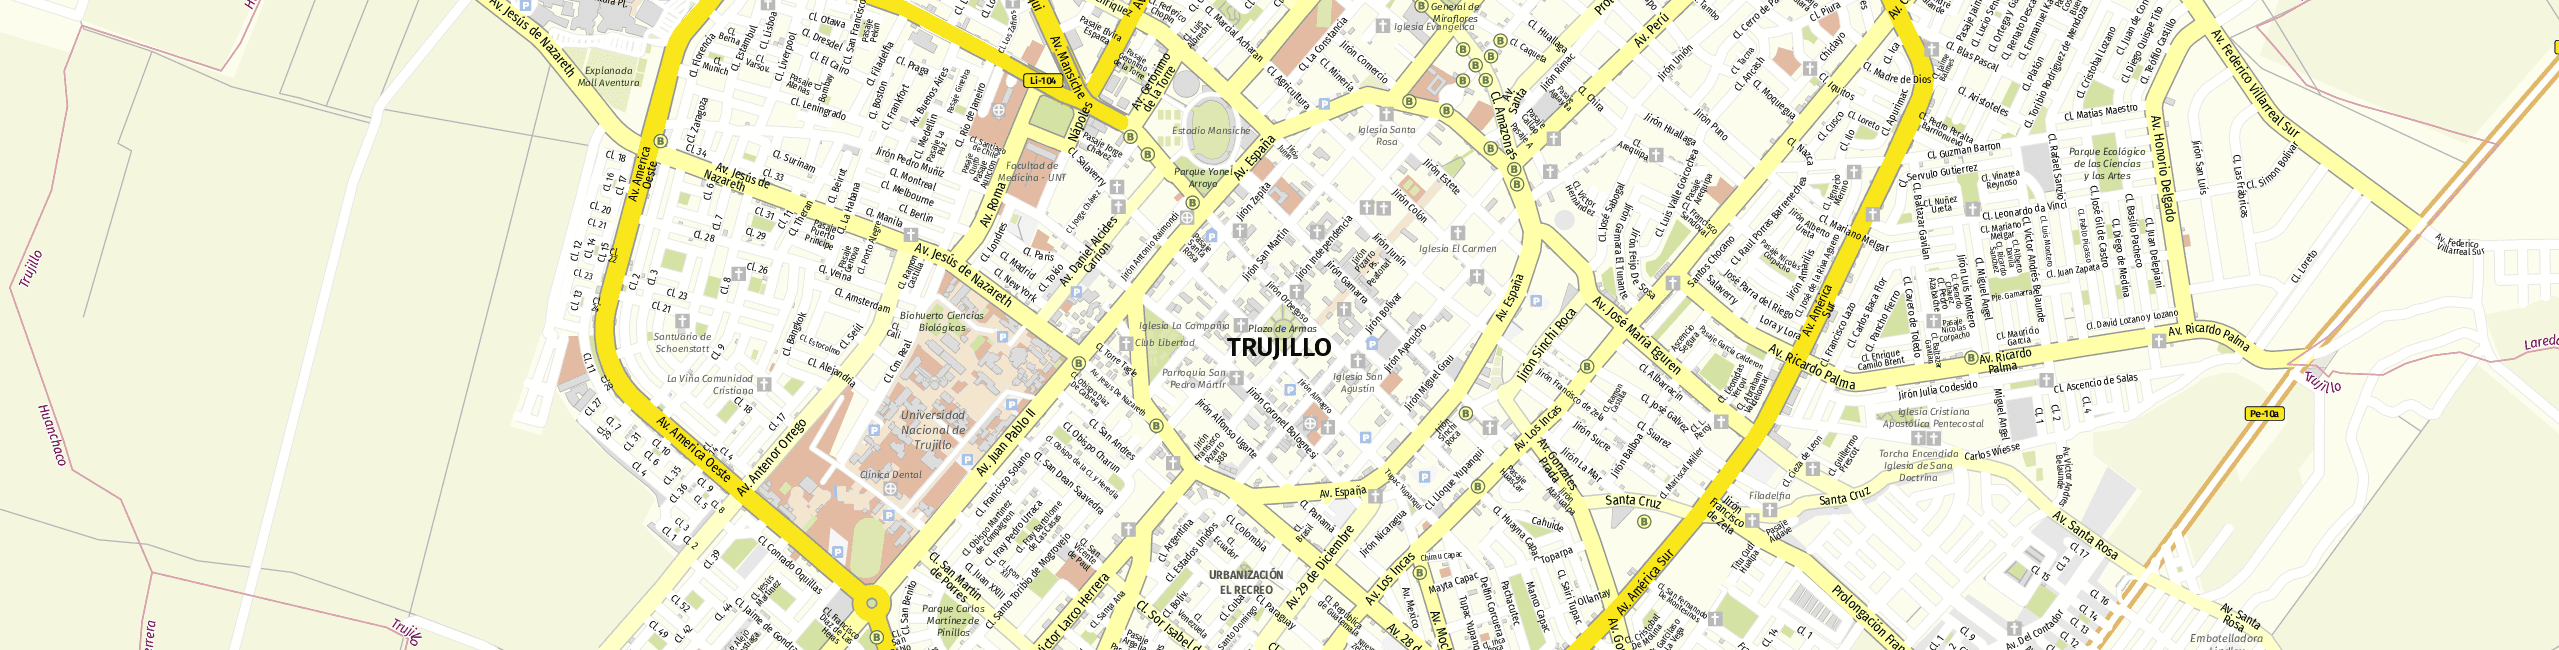 Stadtplan Trujillo zum Downloaden.